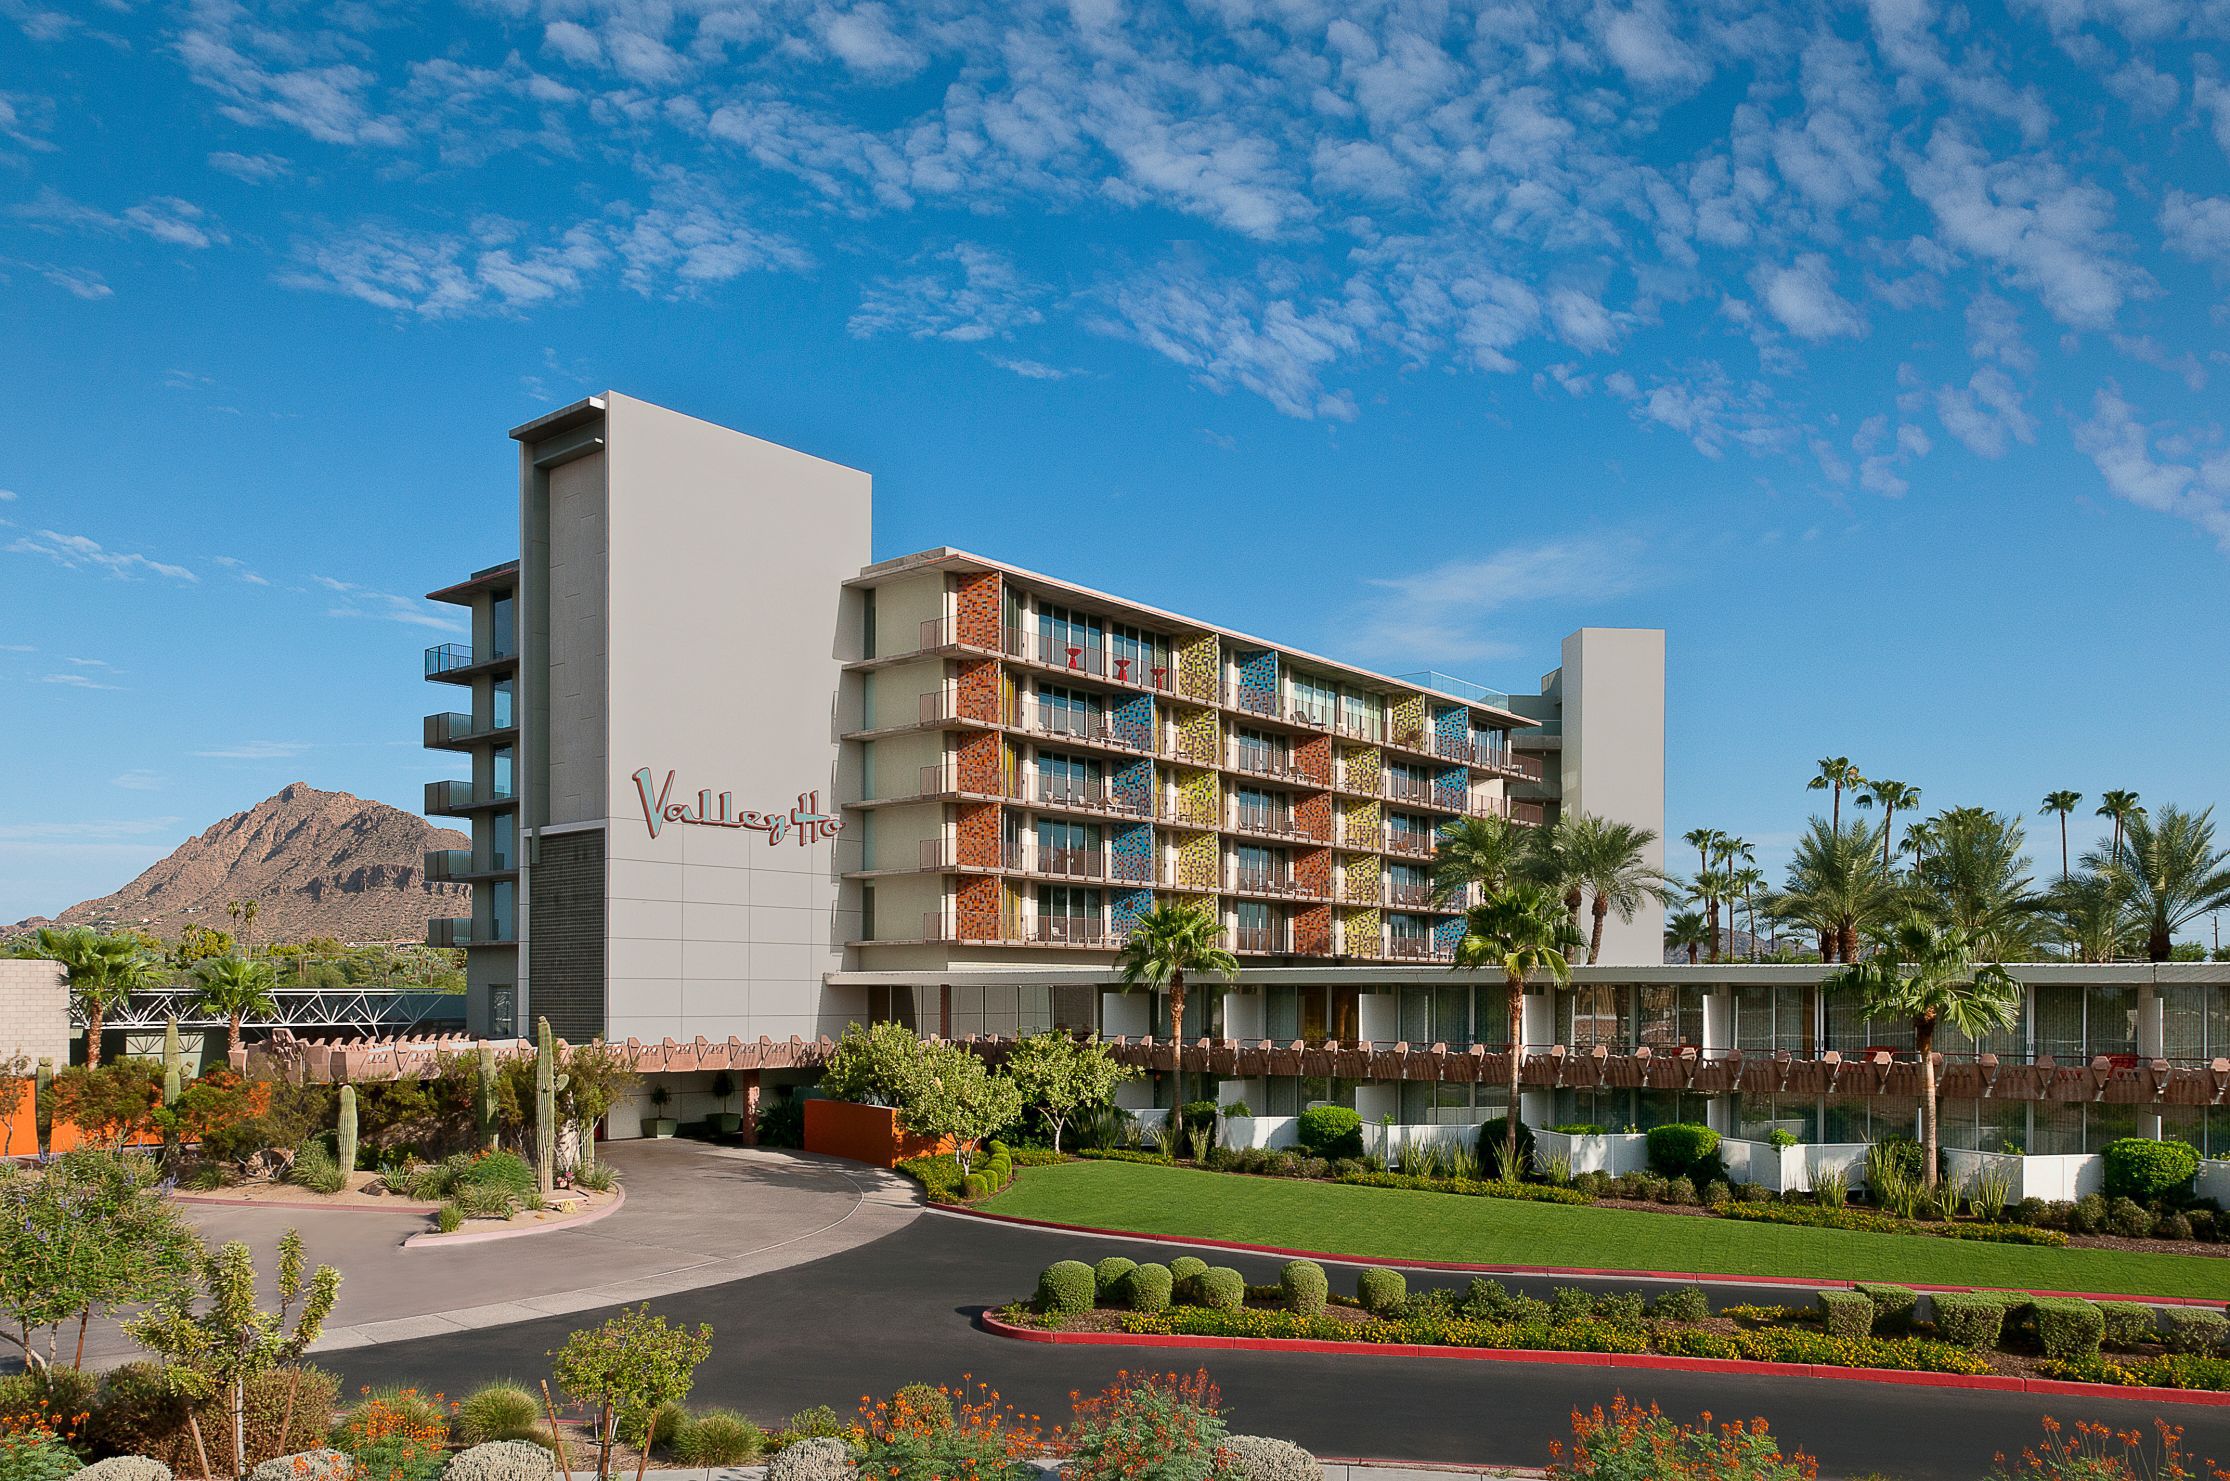 Photo of Hotel Valley Ho, Scottsdale, AZ